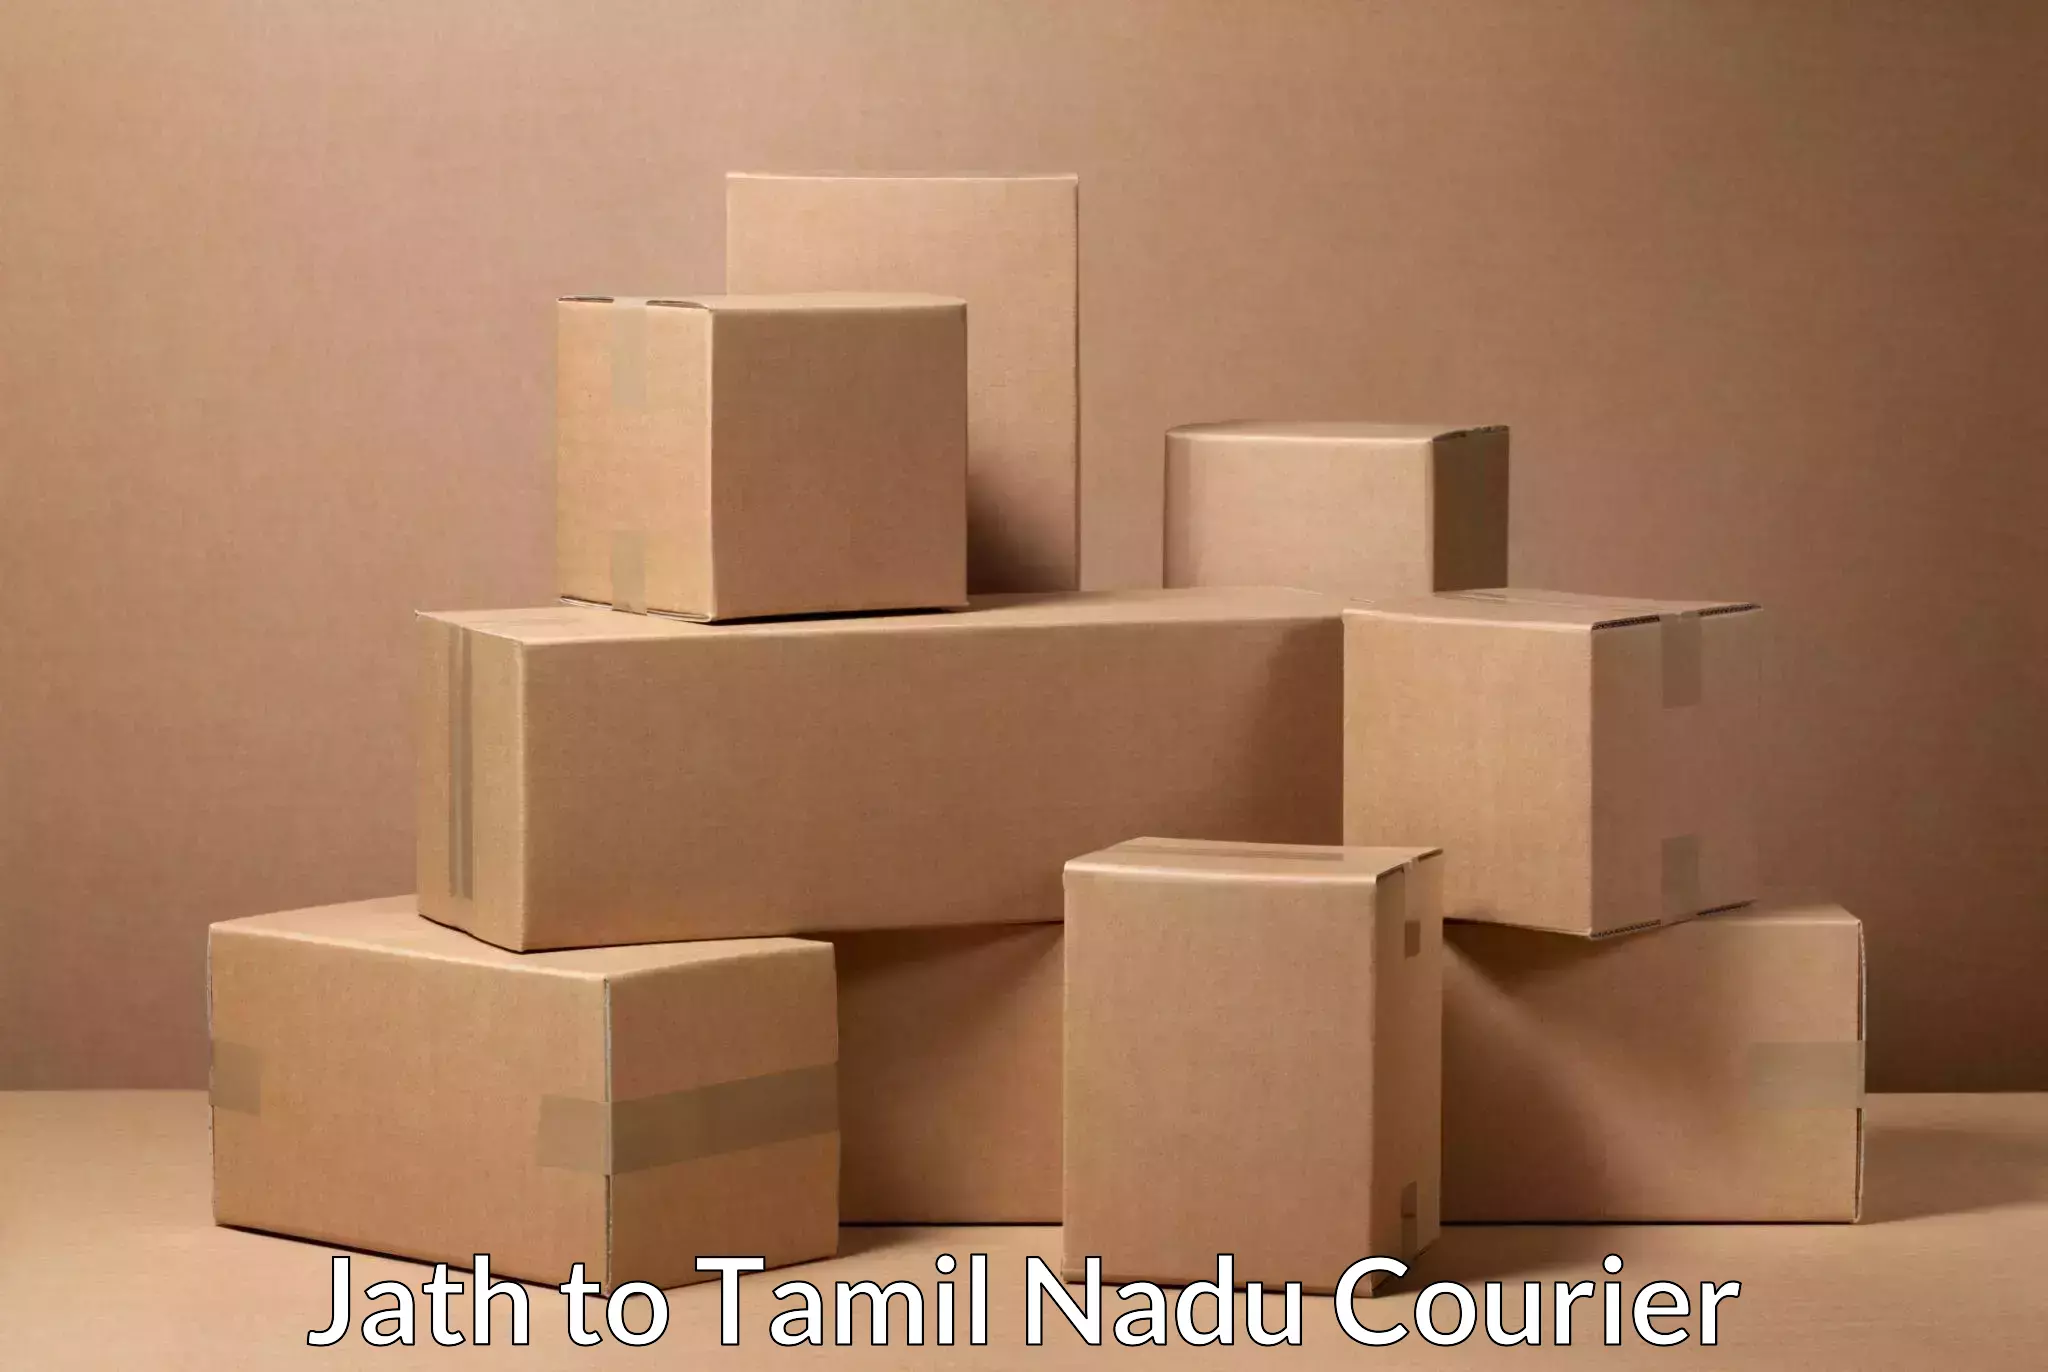 Affordable parcel service Jath to Tamil Nadu